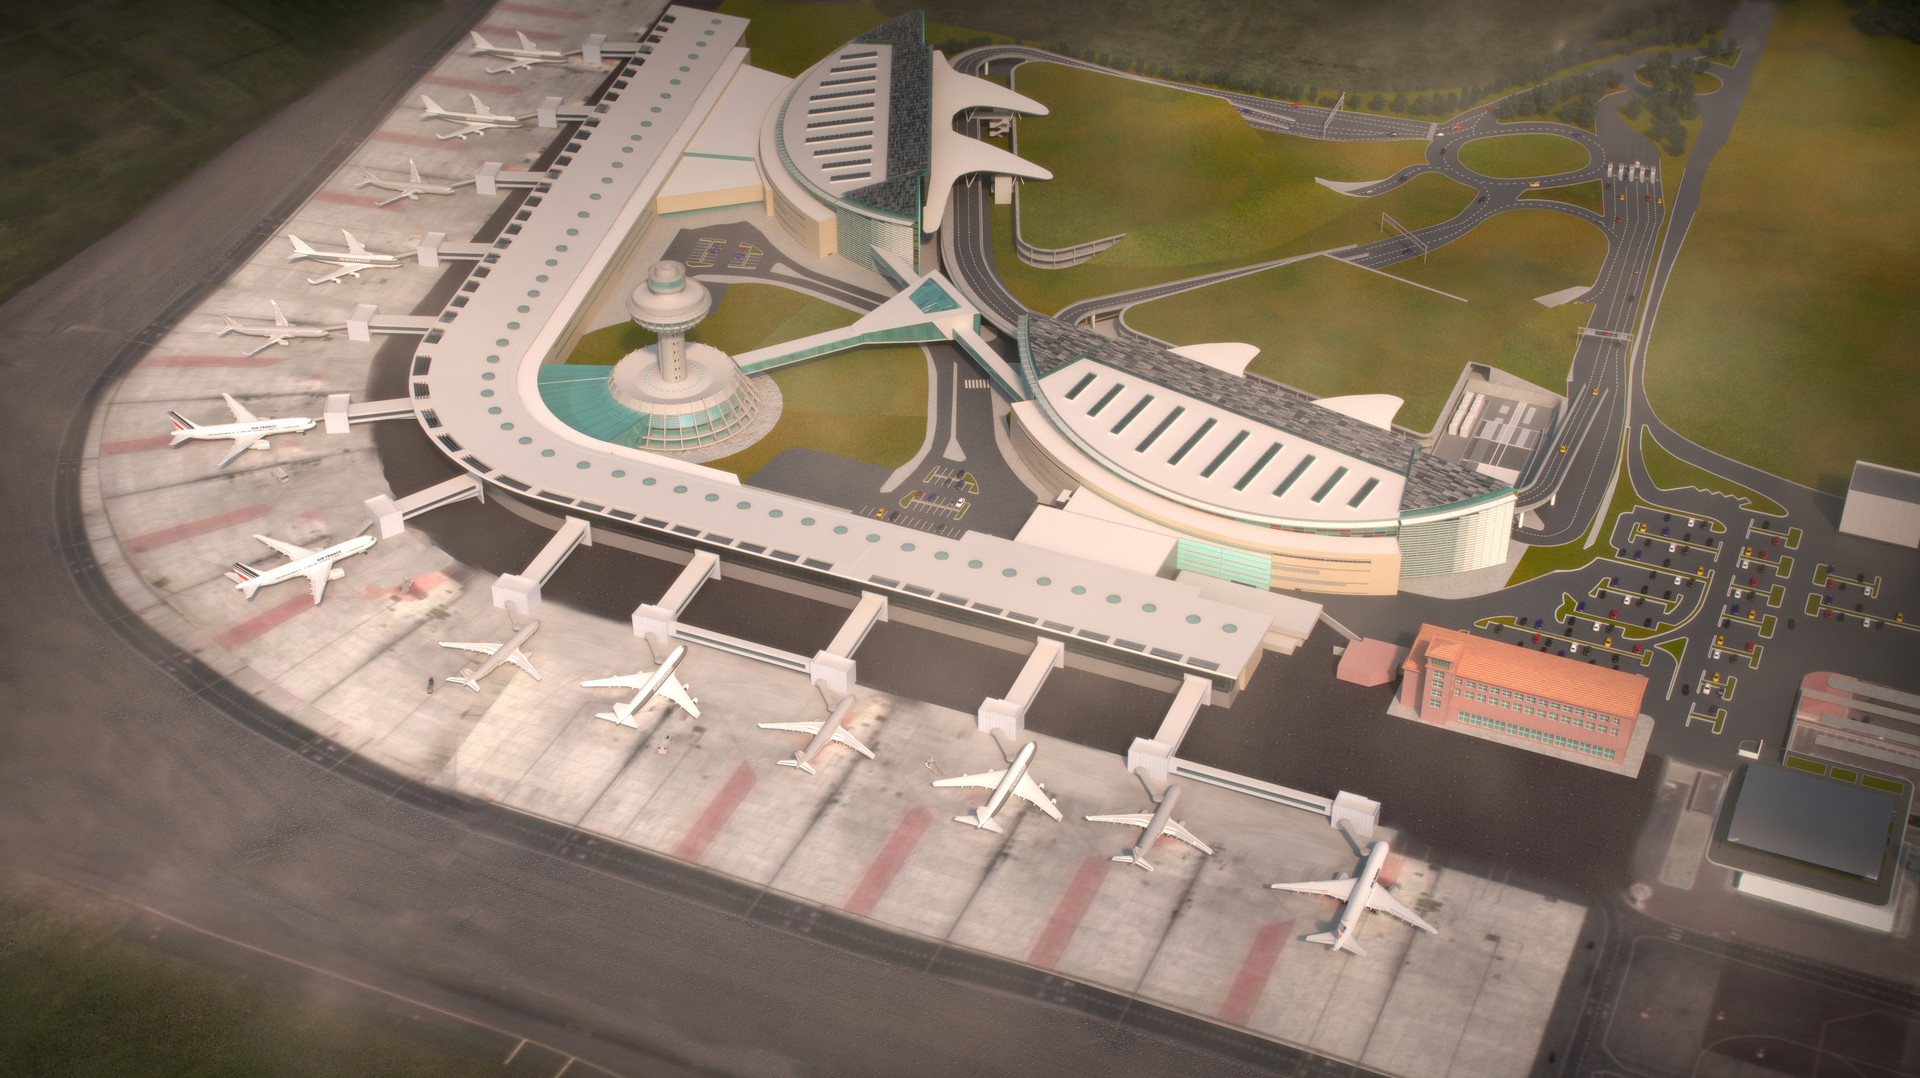 Сайт аэропорта звартноц. План аэропорта Звартноц. Аэропорт Звартноц в Ереване план. Аэропорт Еревана Звартноц новый терминал. Старый терминал аэропорта Звартнотц.